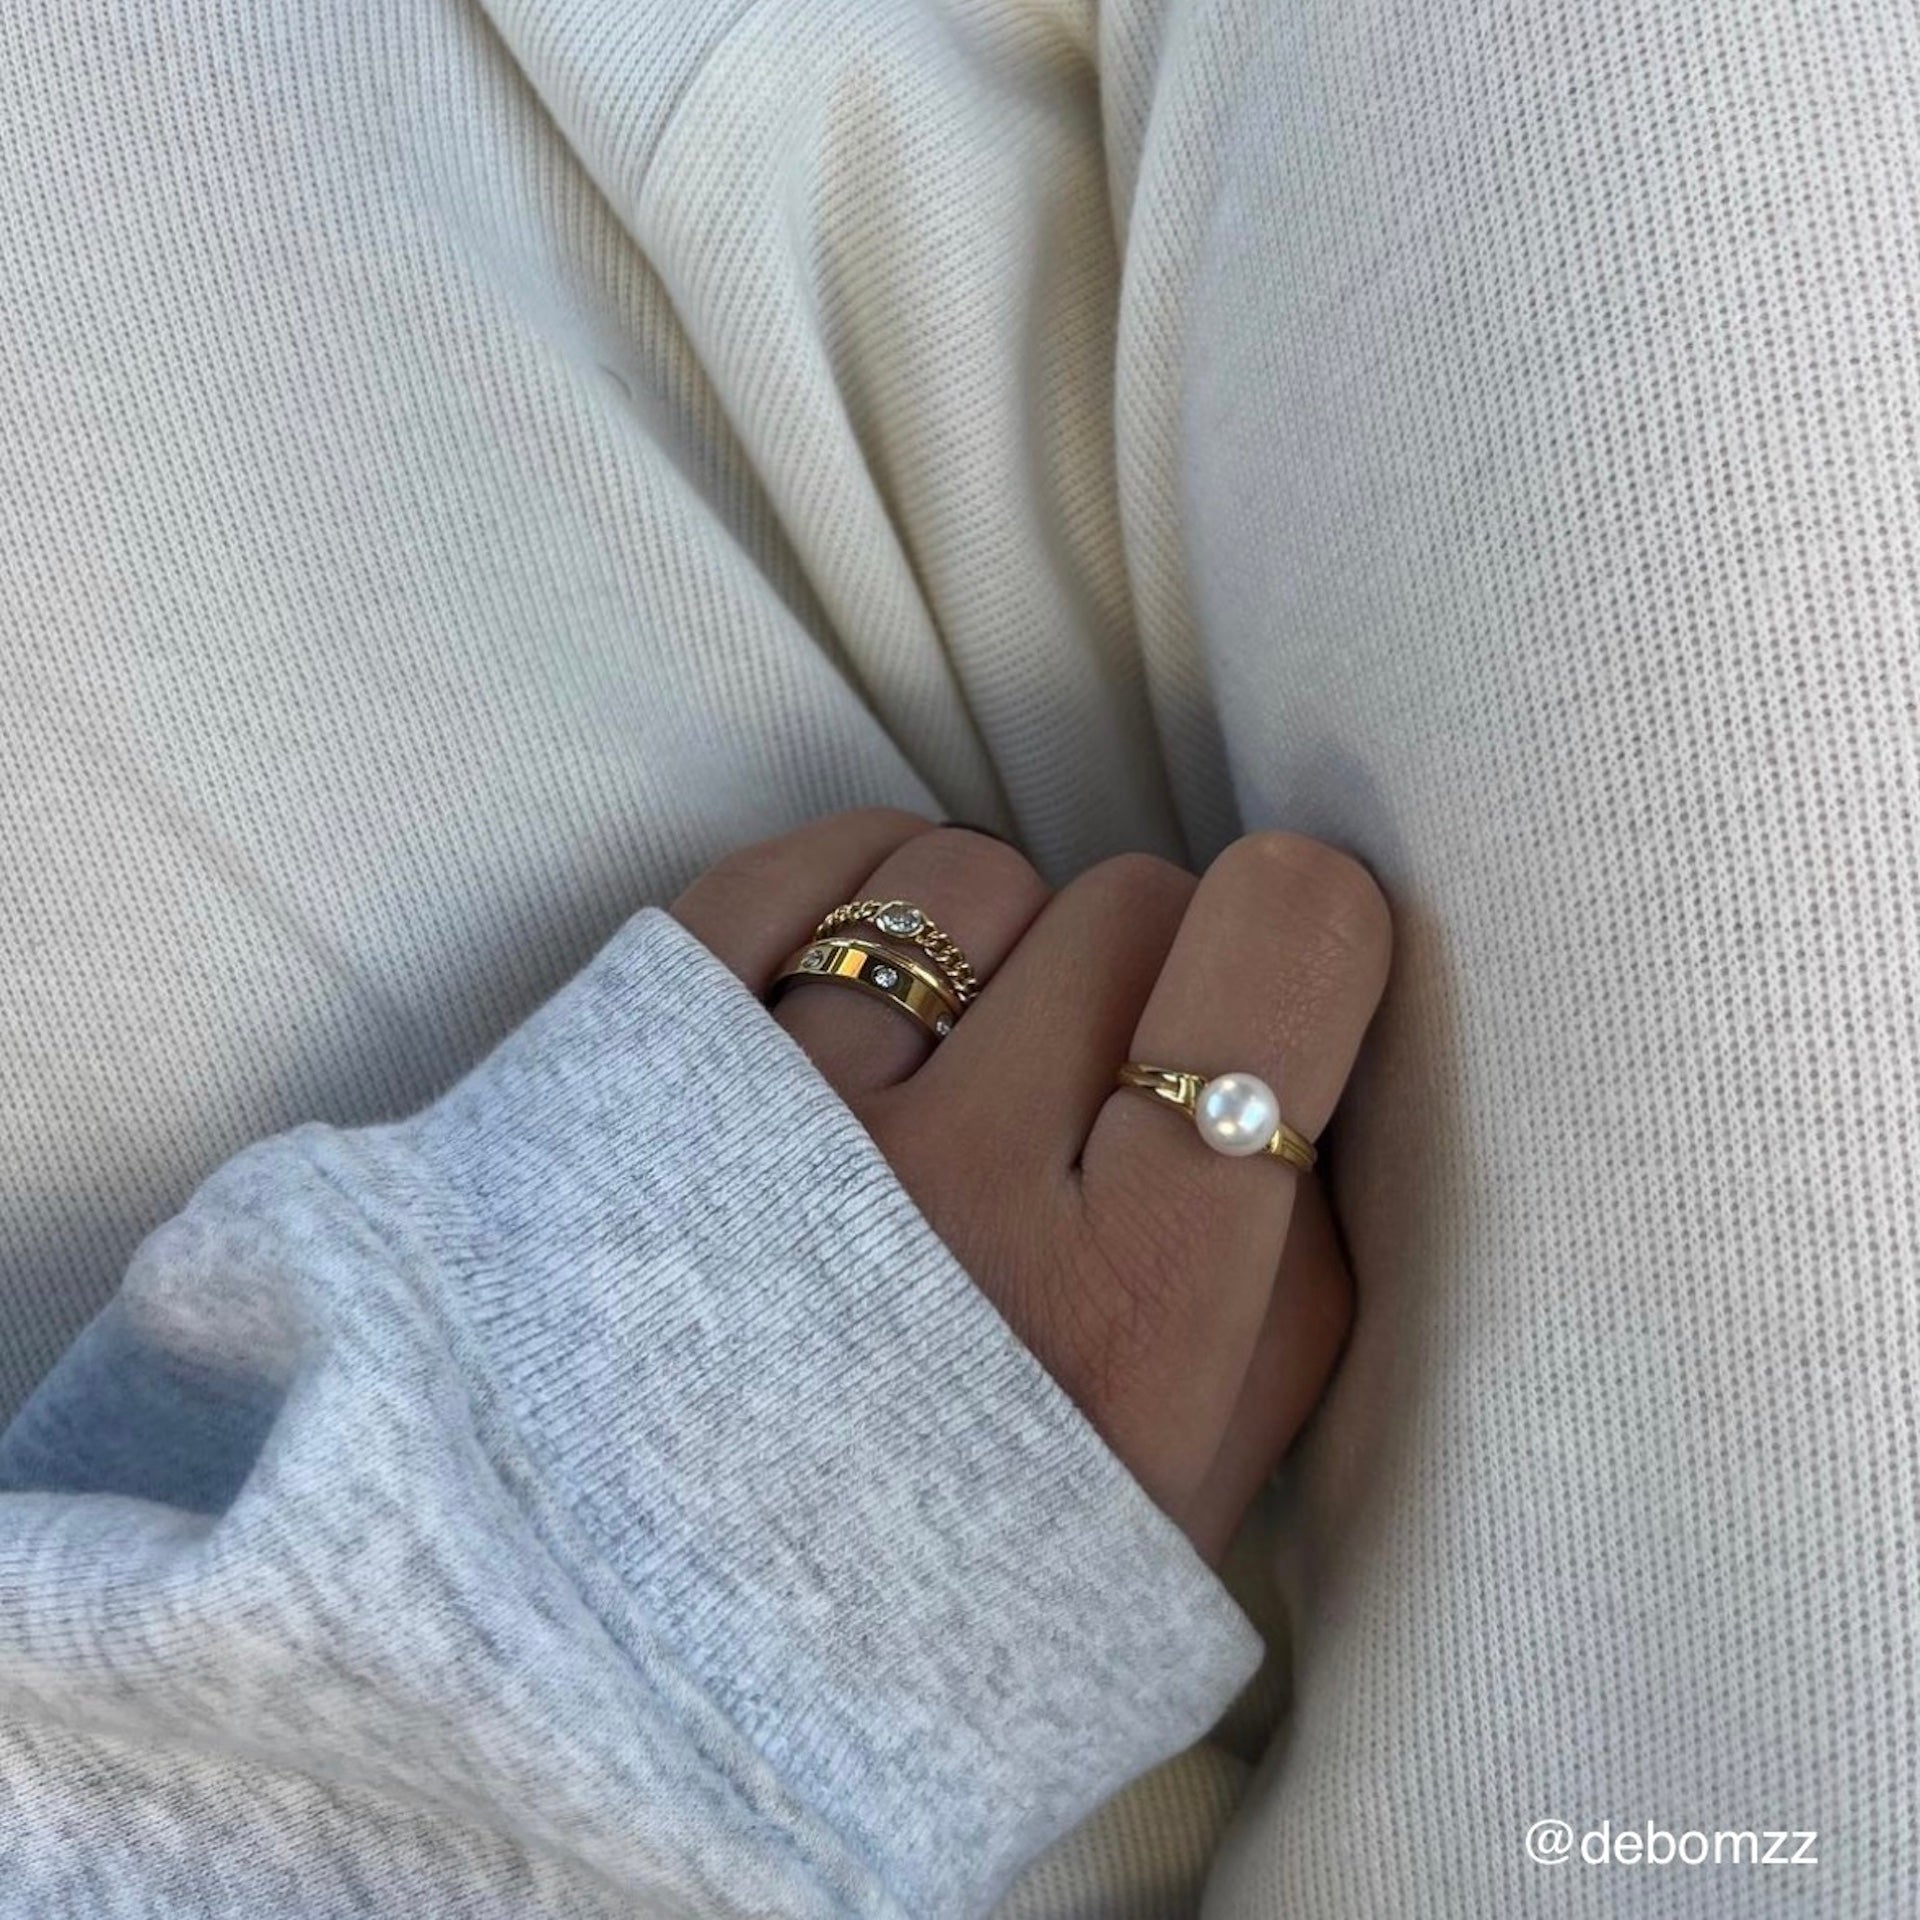 Goldener Ring mit Süßwasserperle getragen an Hand von Frau